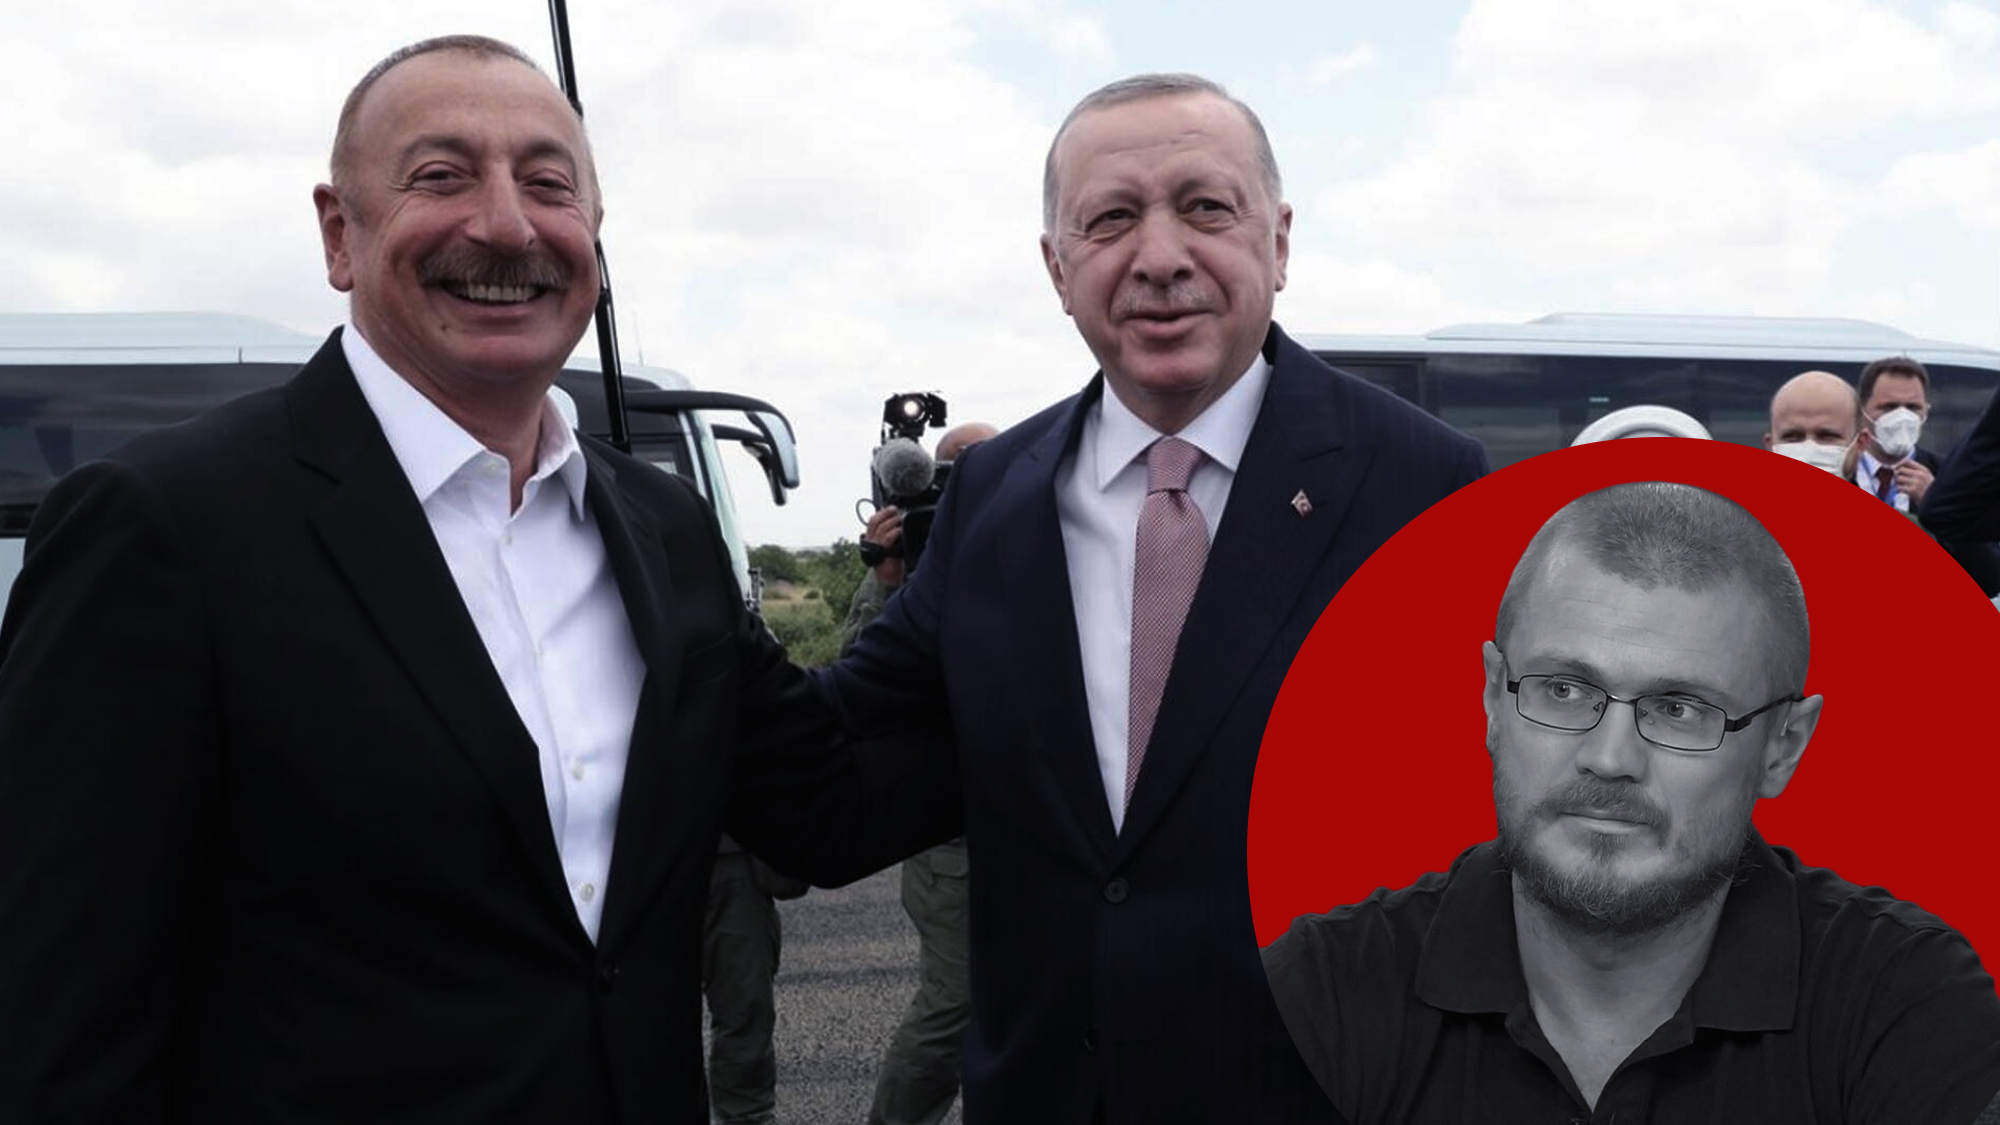 Турецкий гамбит: После визита Эрдогана Баку станет форпостом для экспансии в Киргизию и Узбекистан